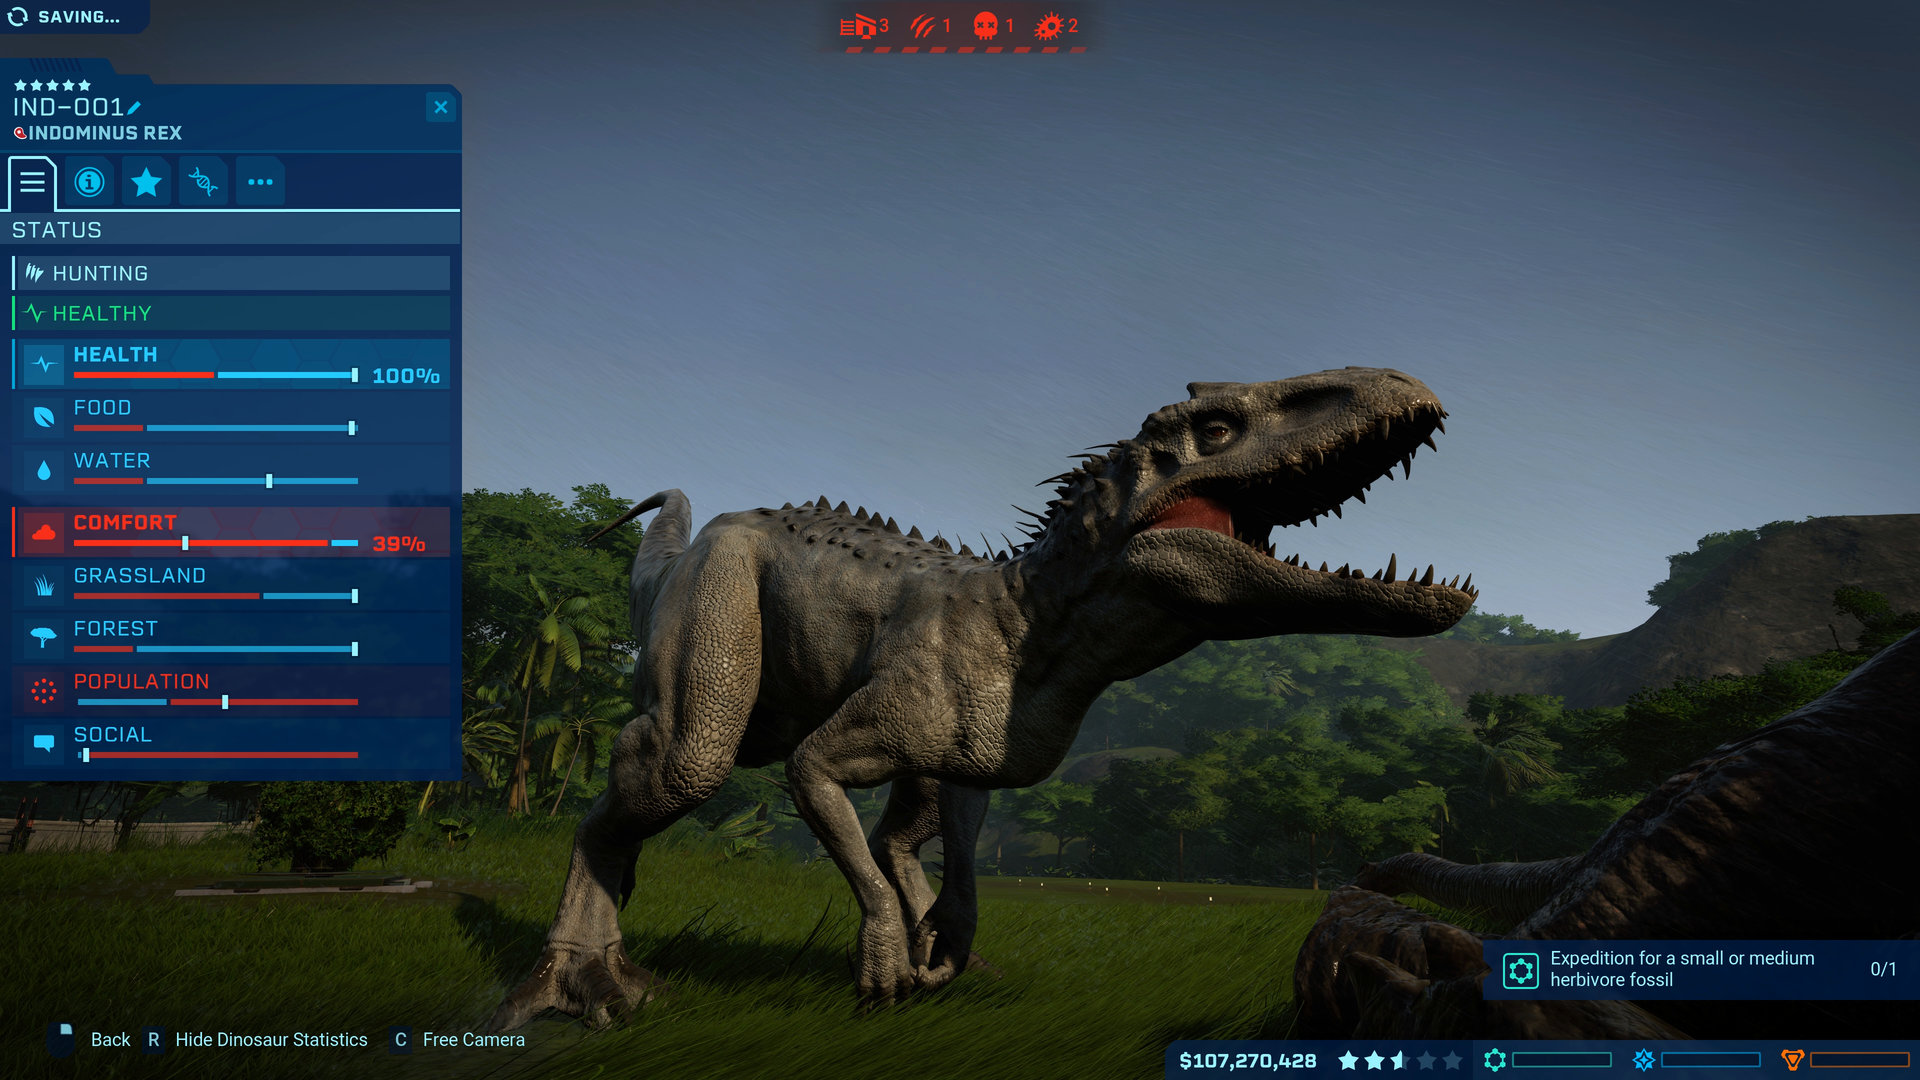 Save 80% on Jurassic World Evolution on Steam